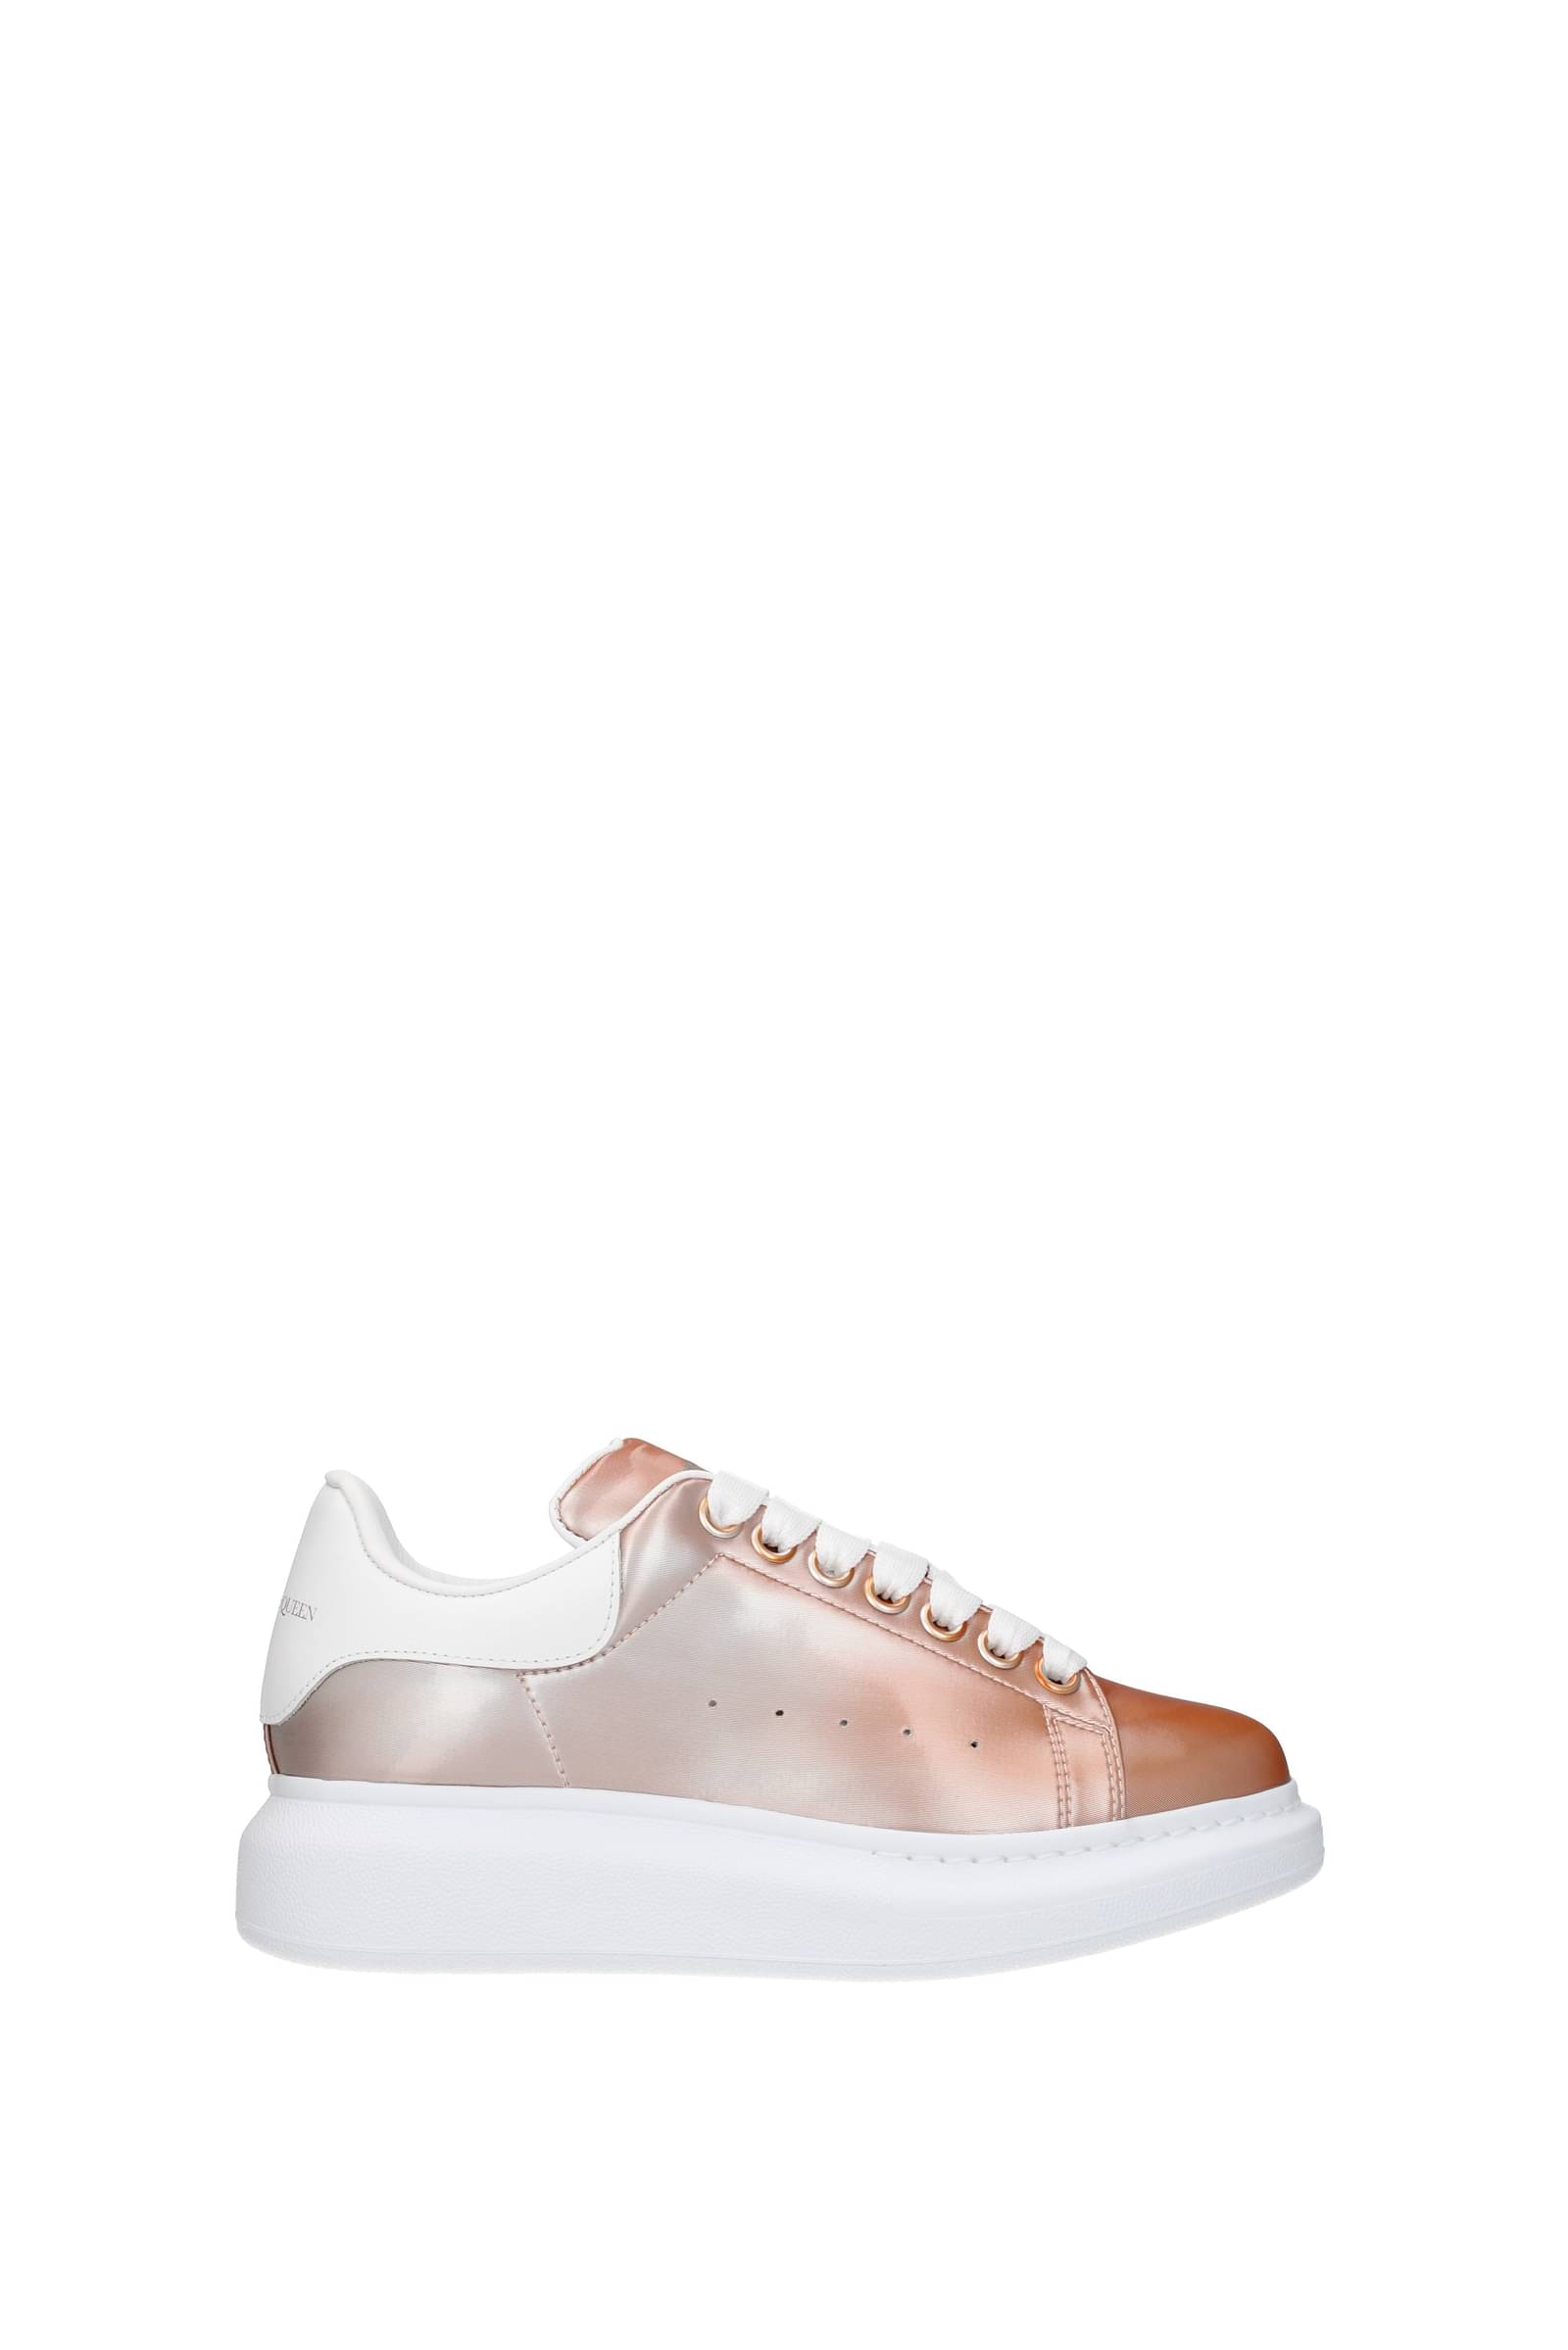 Alexander McQueen Women's Oversized Glitter Sneakers in Pink - Walmart.com